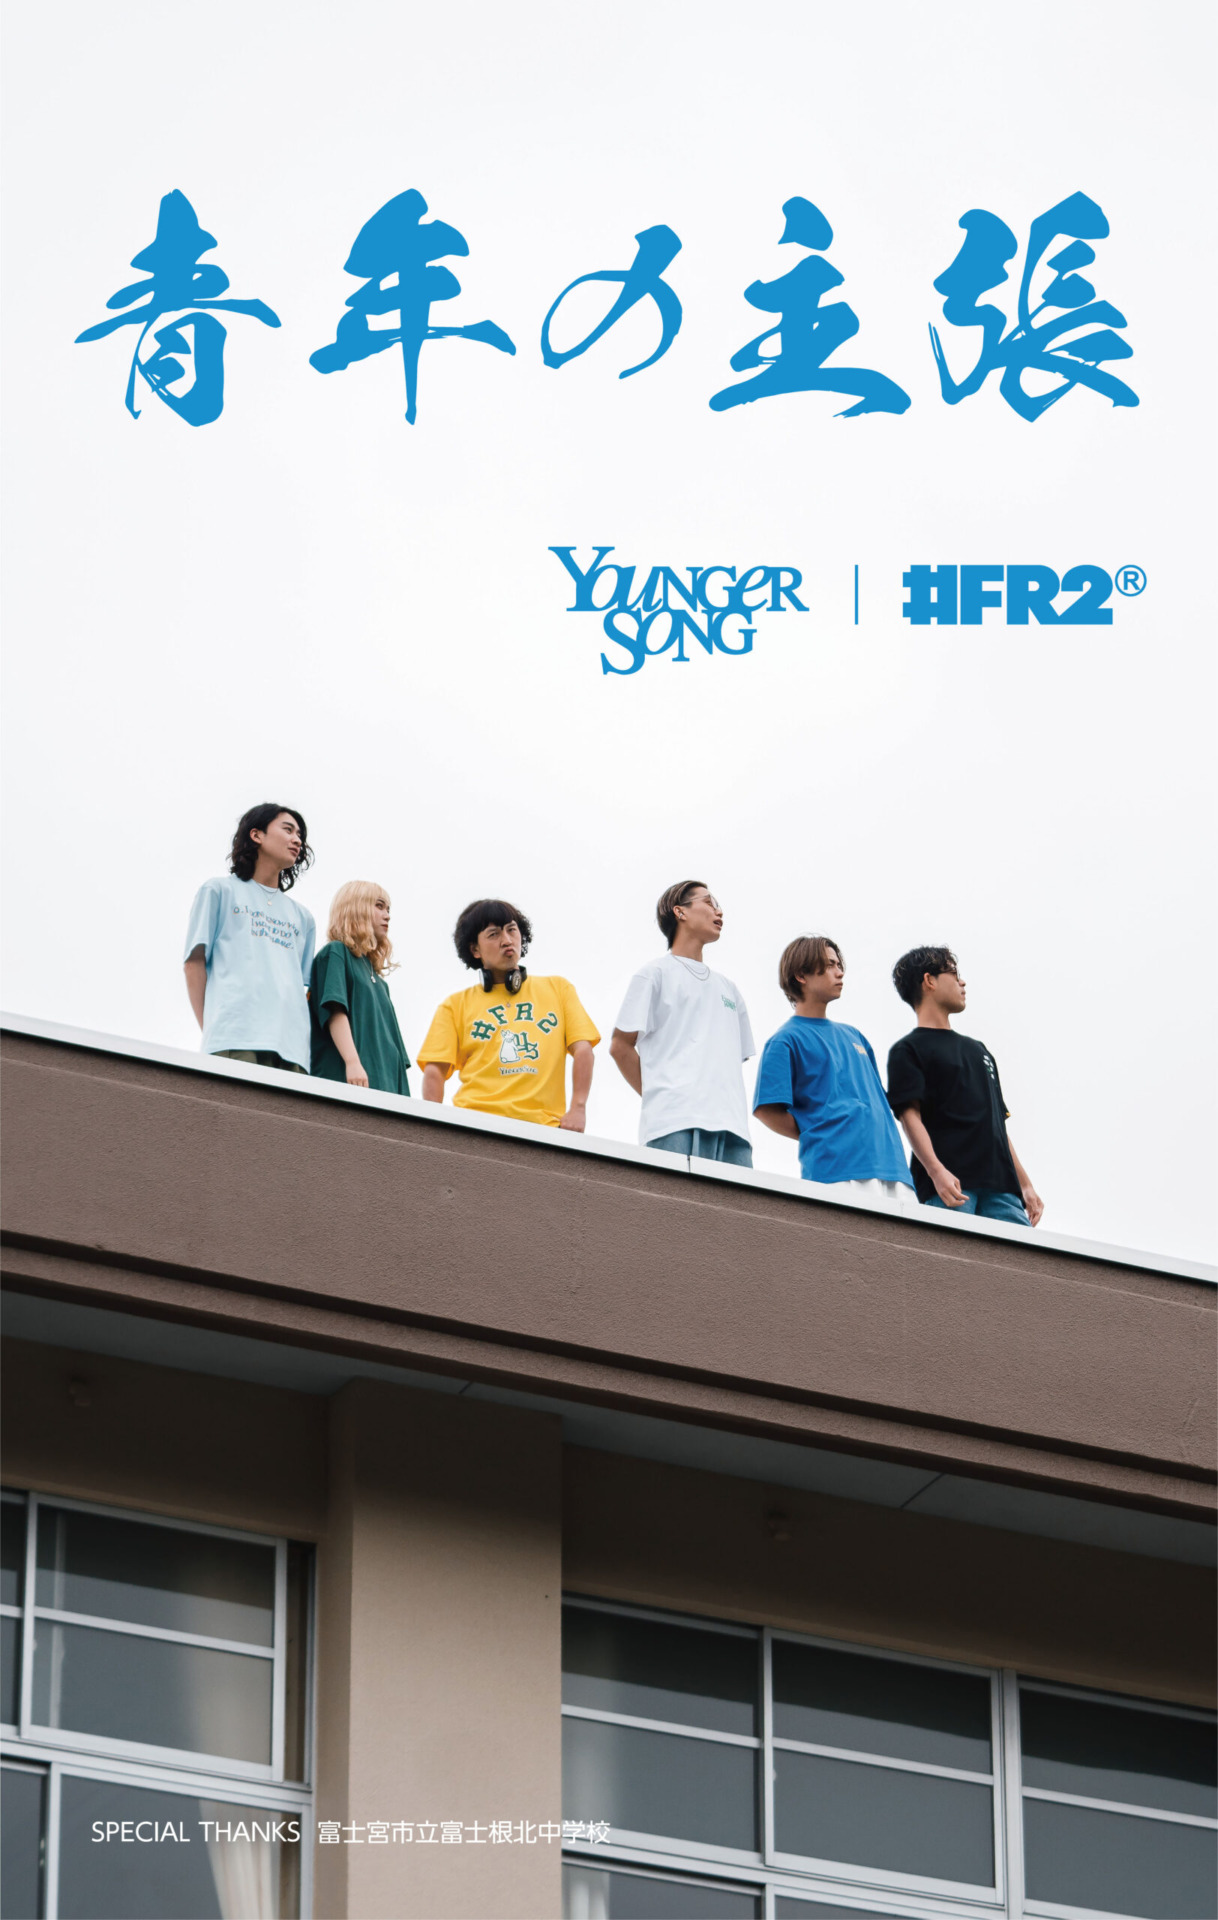 4月29日発売 Younger Song x #FR2